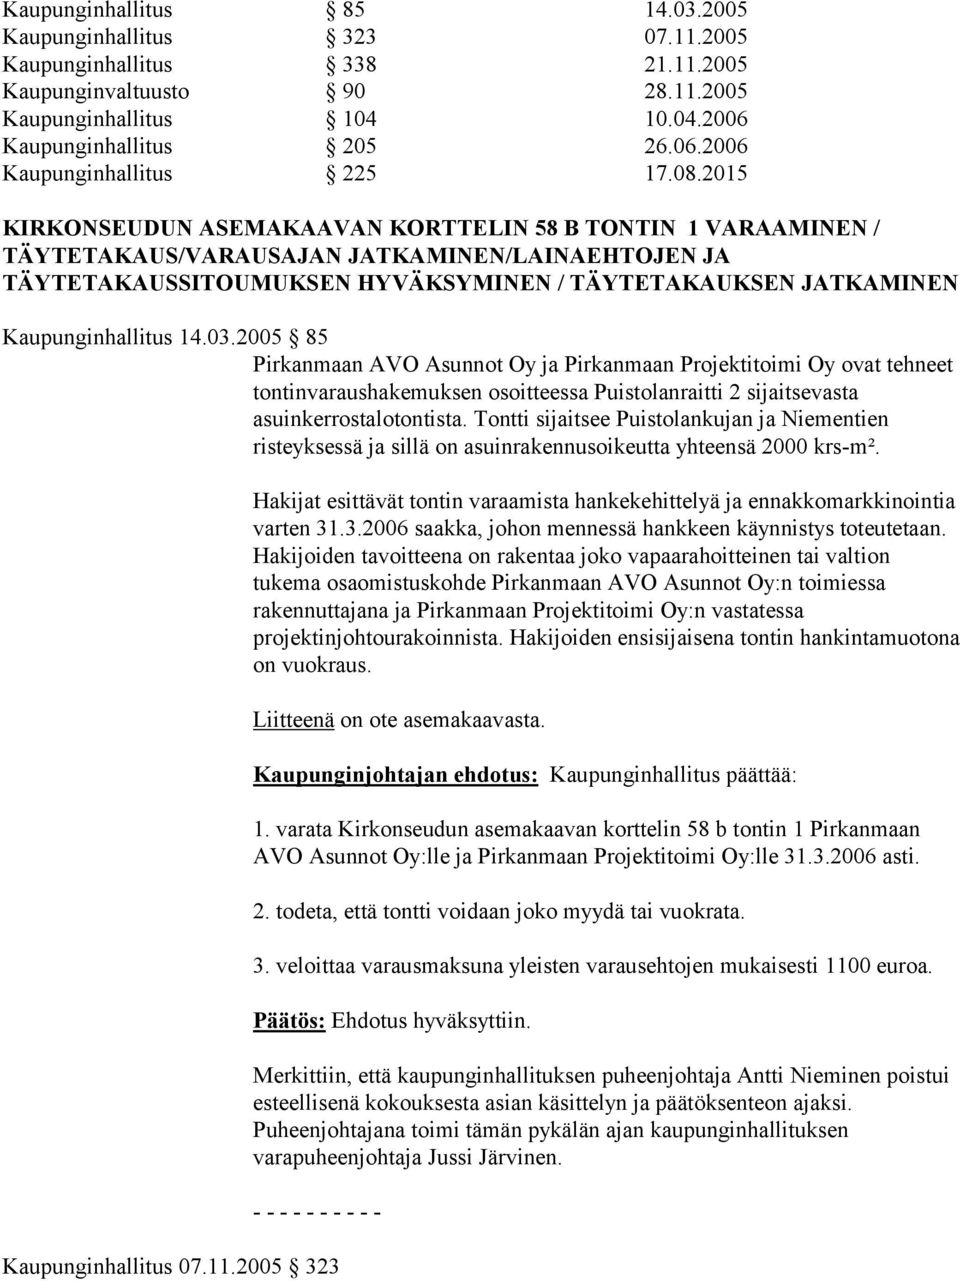 Kaupunginhallitus 14.03.2005 85 Pirkanmaan AVO Asunnot Oy ja Pirkanmaan Projektitoimi Oy ovat tehneet tontinvaraushakemuksen osoitteessa Puistolanraitti 2 sijaitsevasta asuinkerrostalotontista.